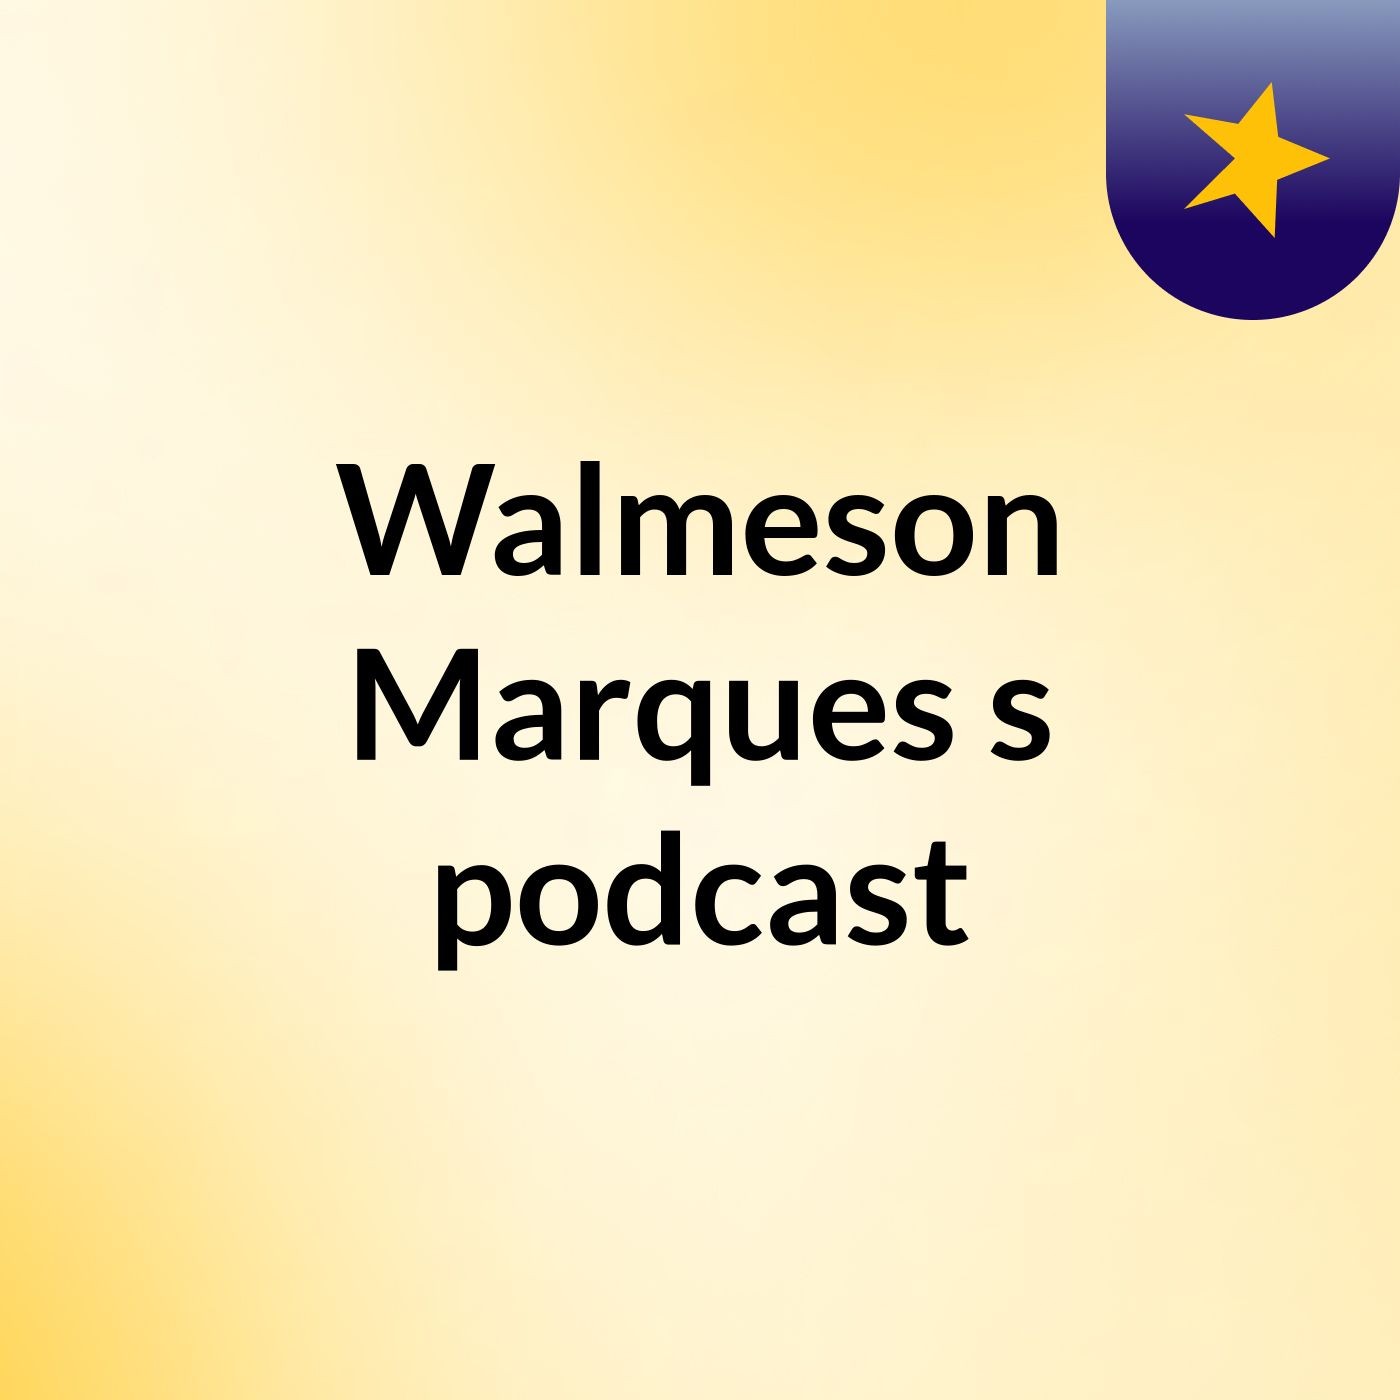 Walmeson Marques's podcast